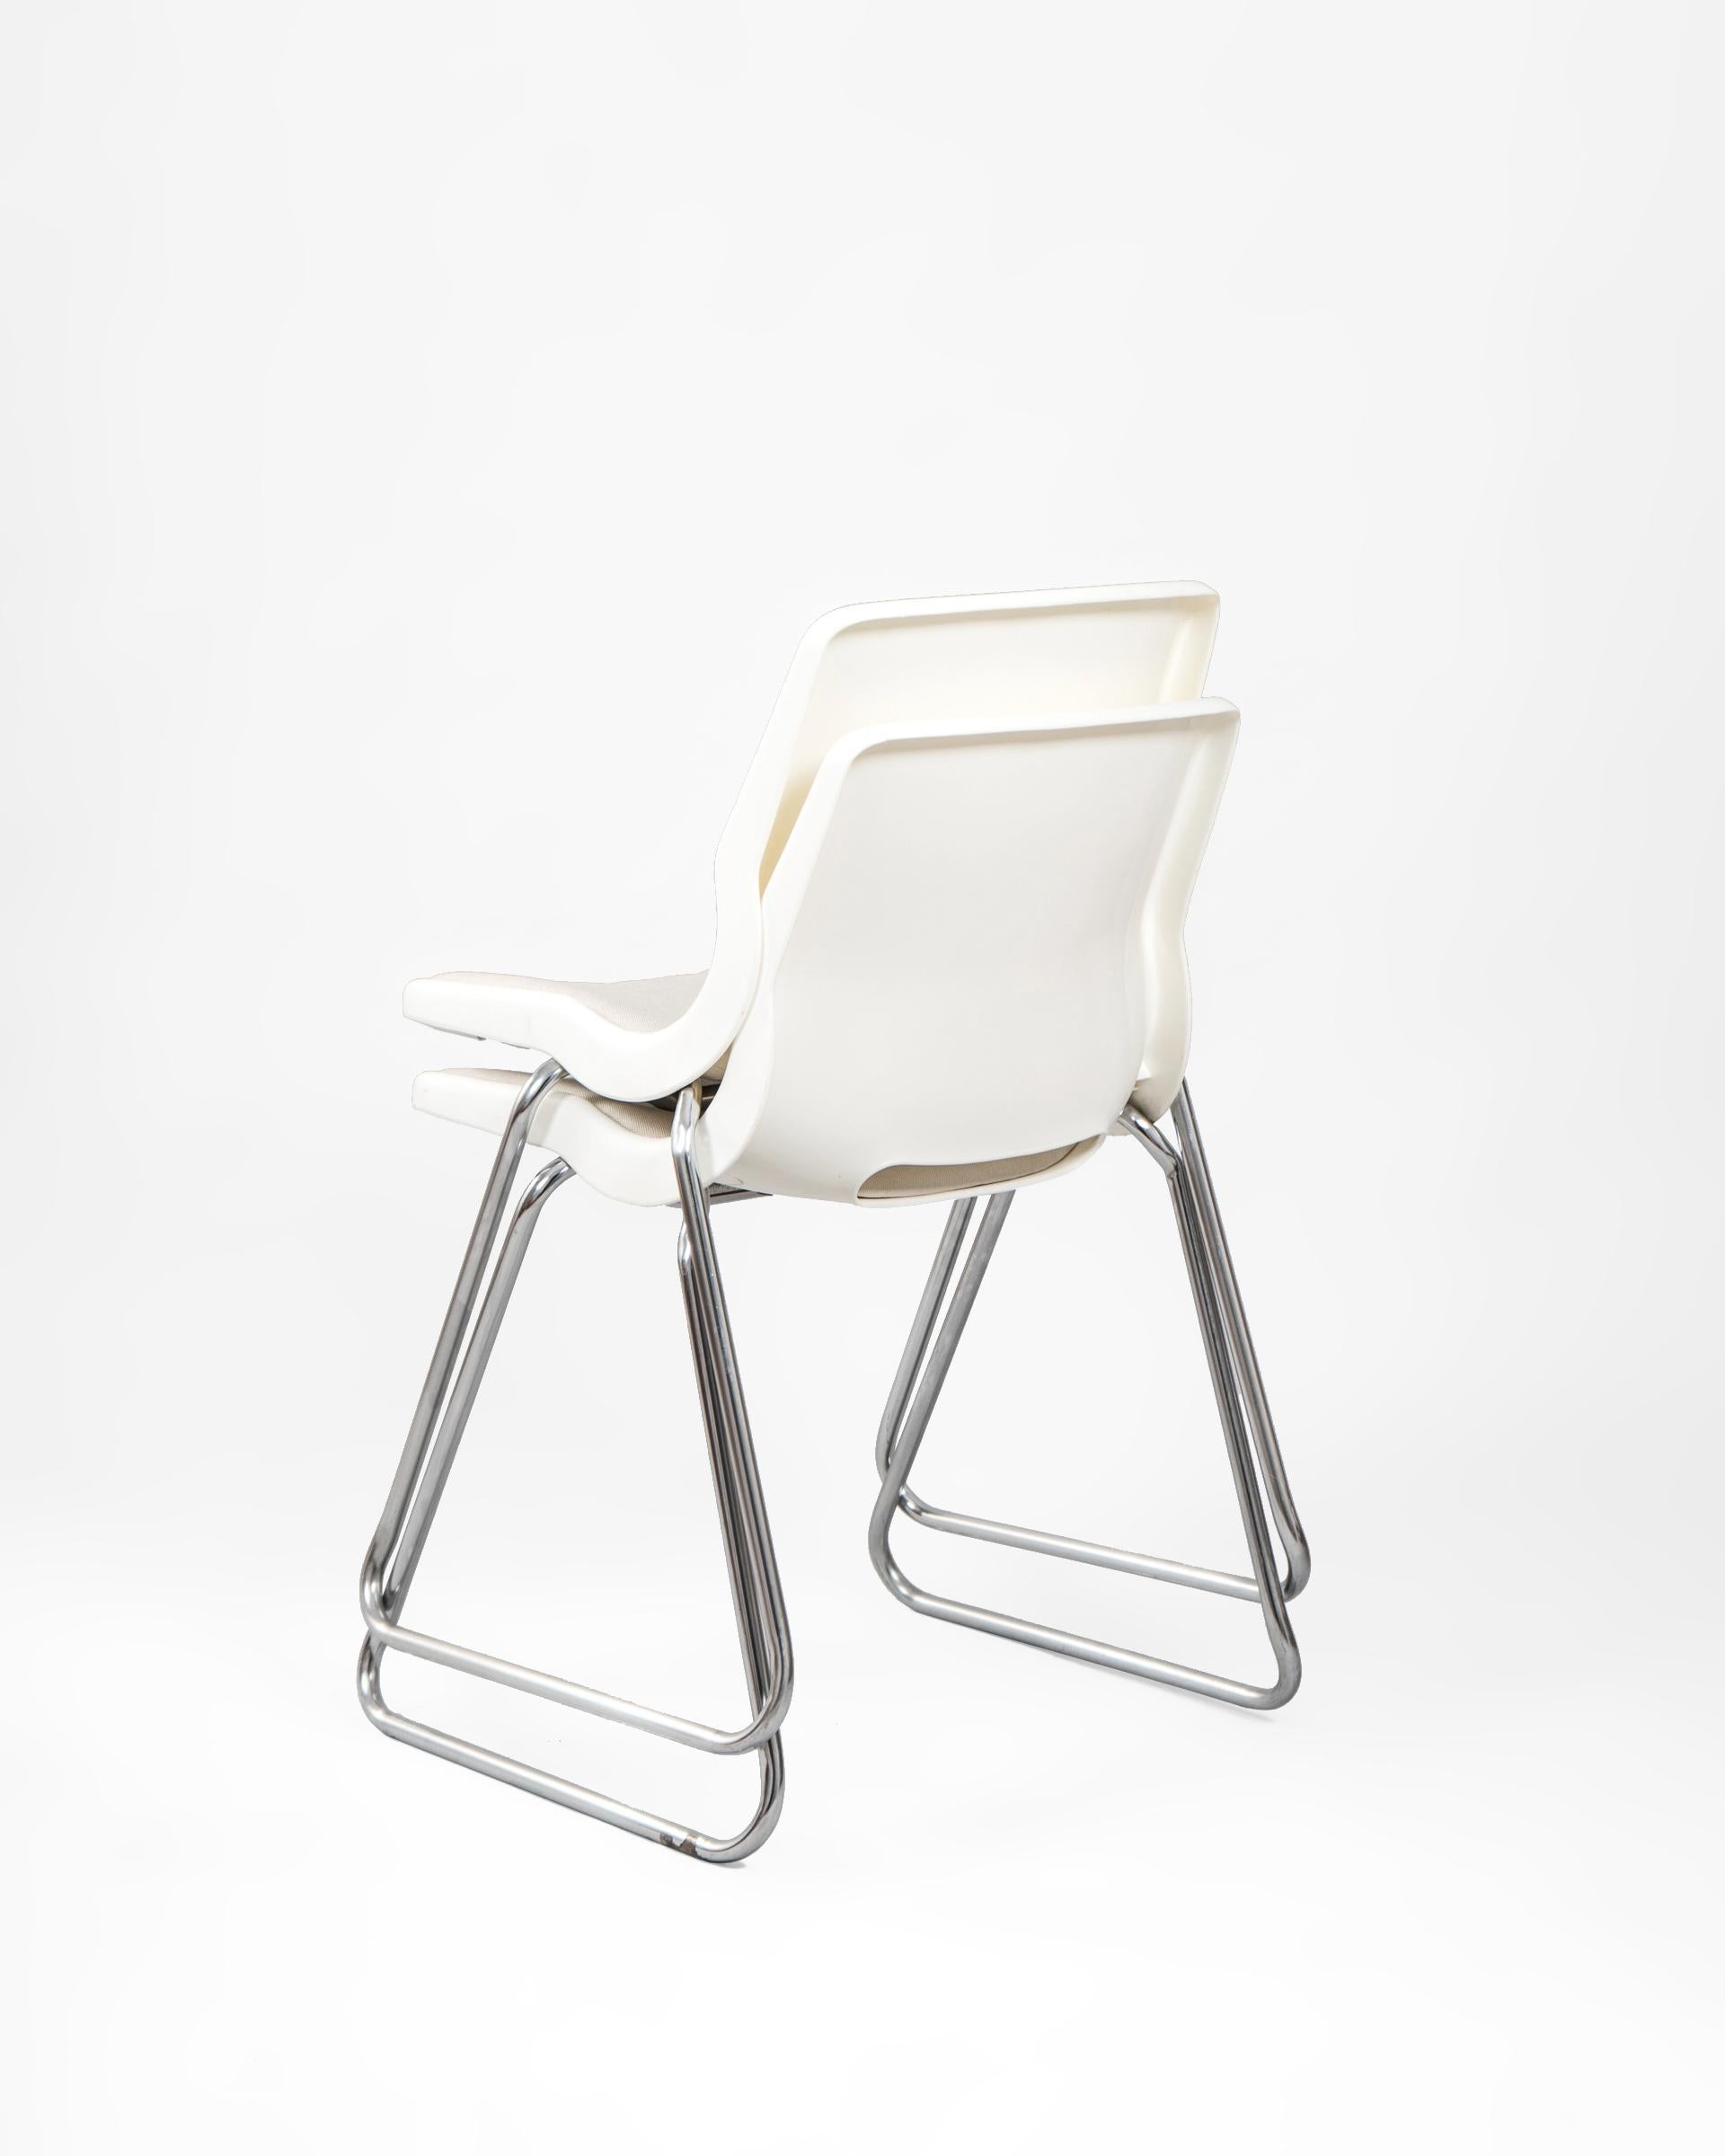 Pareja de sillas apilables diseñadas por Svante Schöblom para la firma sueca Overman en la década de los 1960’s. Aunque editadas en varios colores, el diseño en blanco se adapta a cualquier espacio y nos ofrece una mezcla perfecta entre la